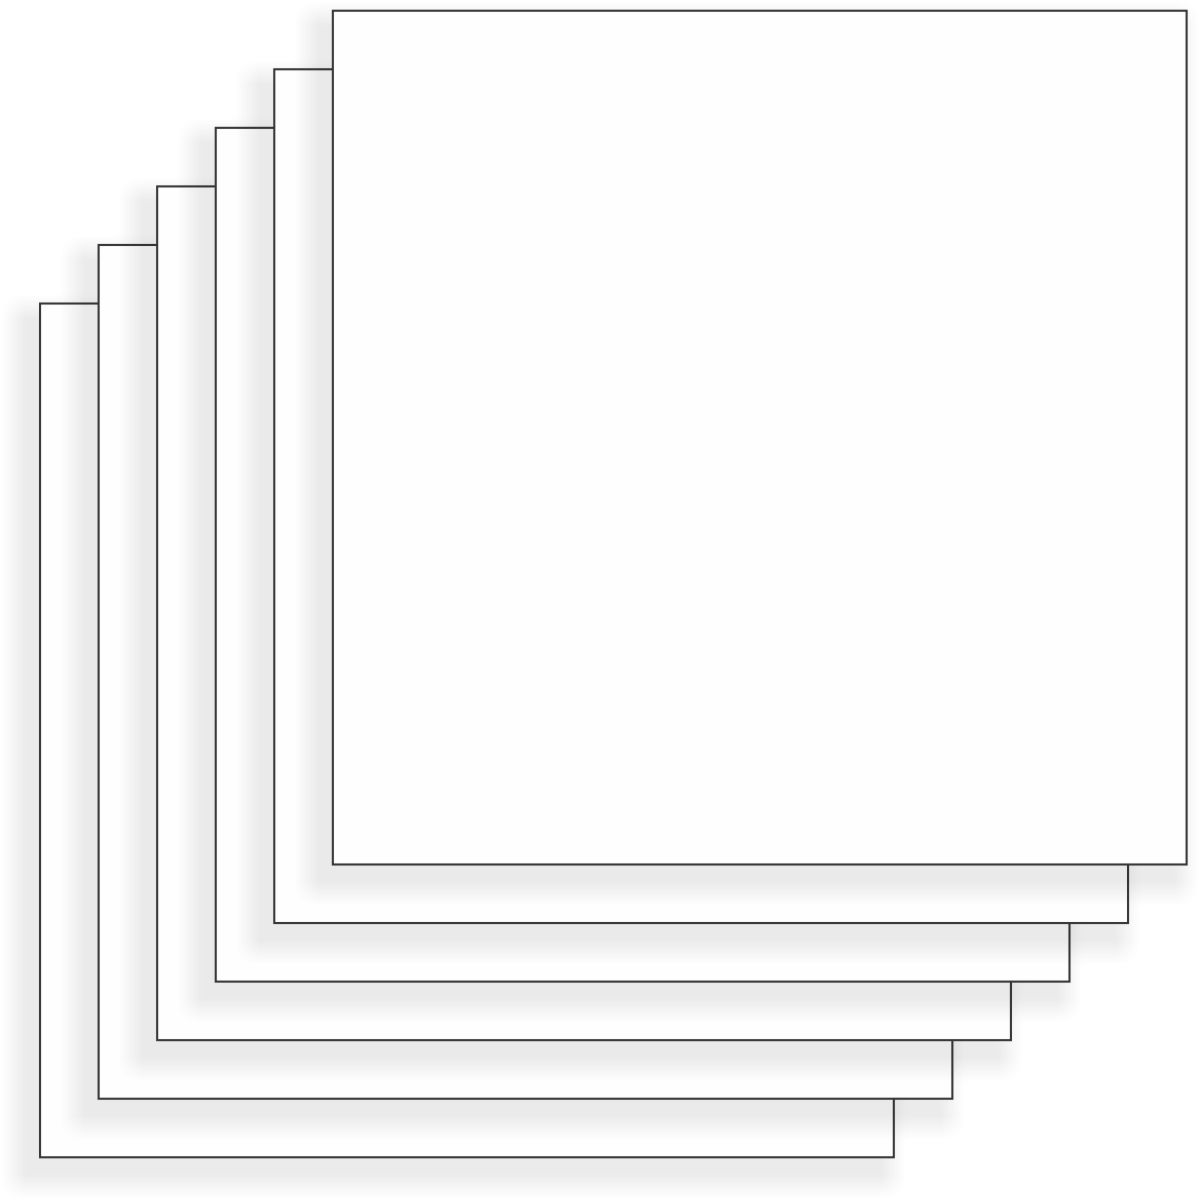 Jack Dempsey Stamped White Quilt Blocks 18x18 6/Pkg, Kaleidoscope Star